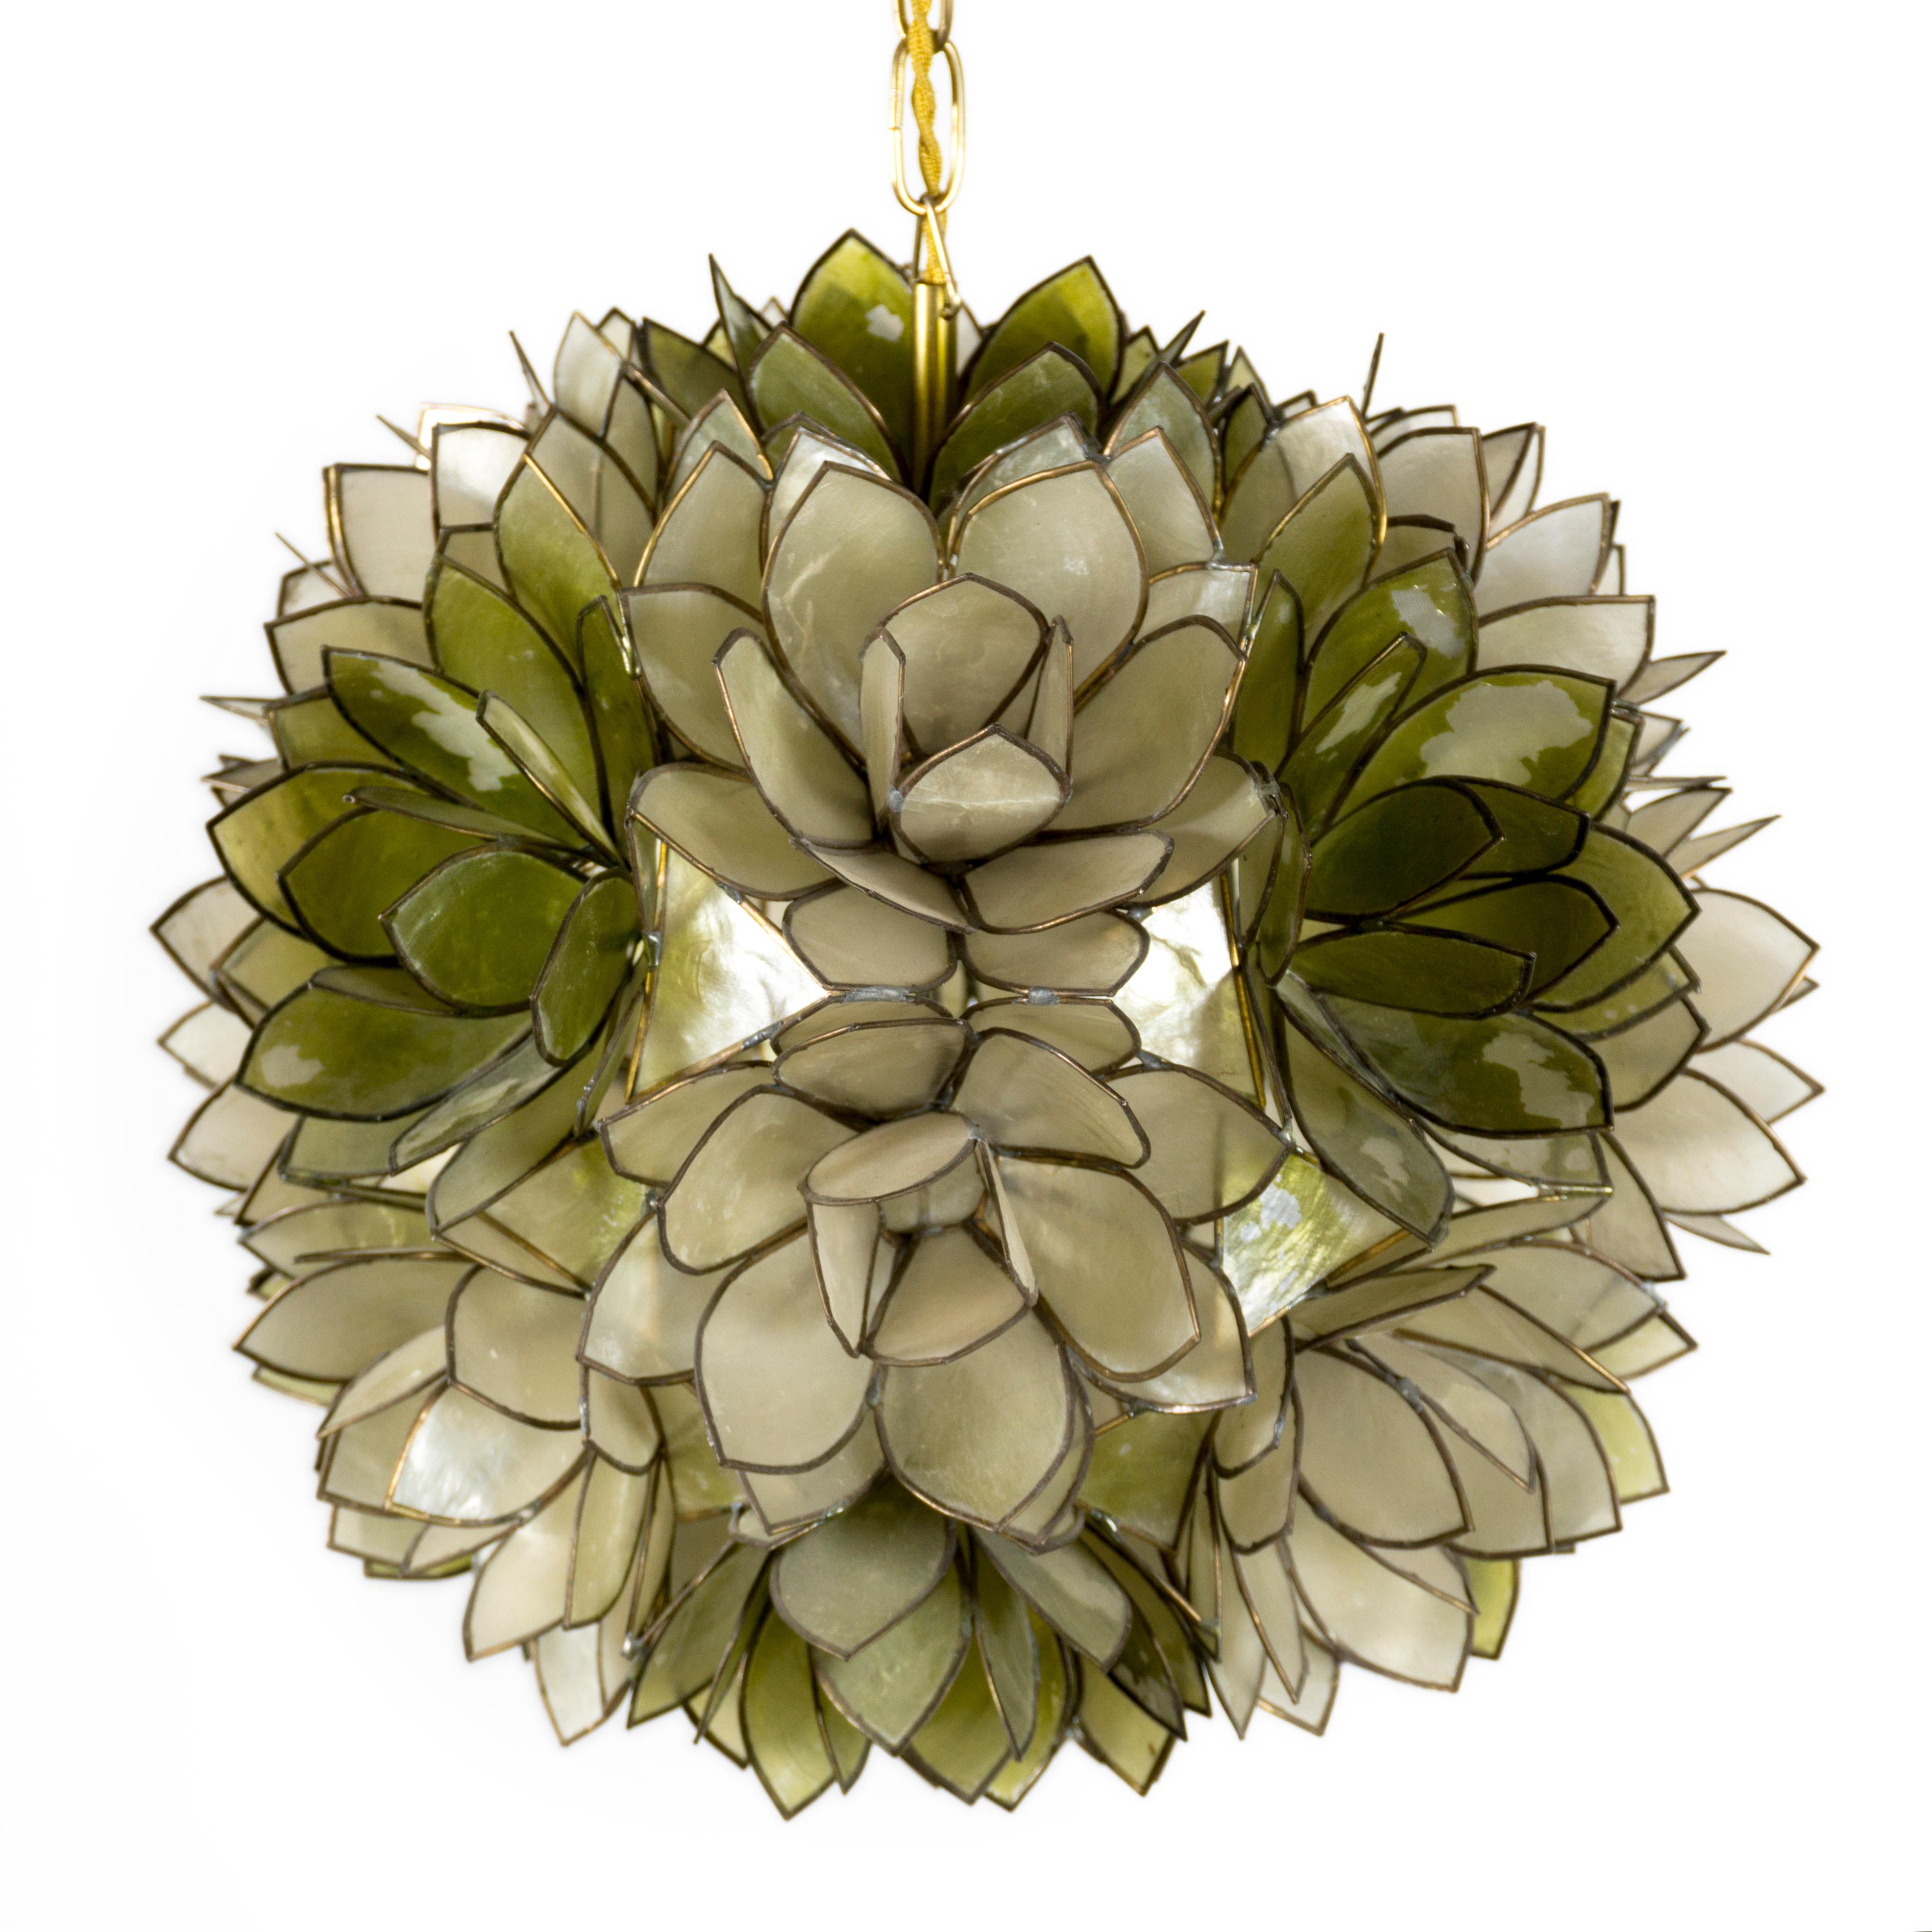 Lampe suspendue sculpturale très décorative en nacre des années 1970. La lampe suspendue sphérique et florale se compose de nombreux groupes de fines feuilles de nacre encadrées individuellement dans du métal. La lampe est complétée par une belle